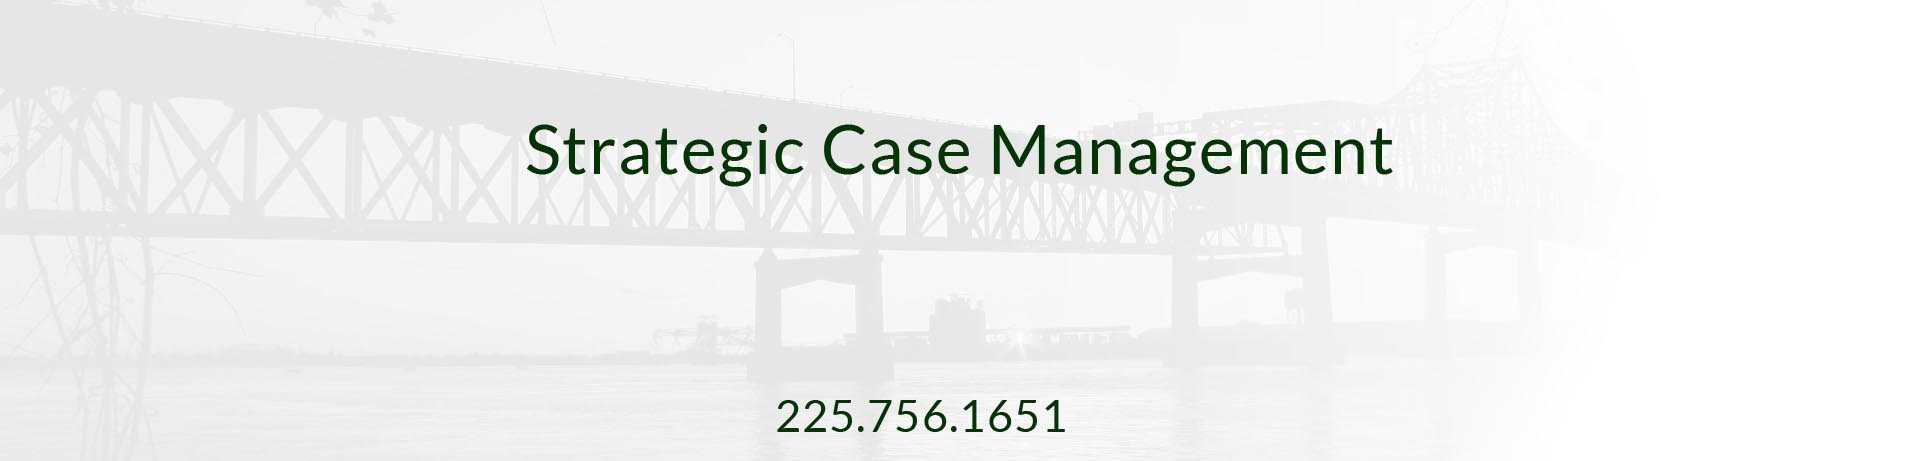 Strategic Case Management - Case Management Companies